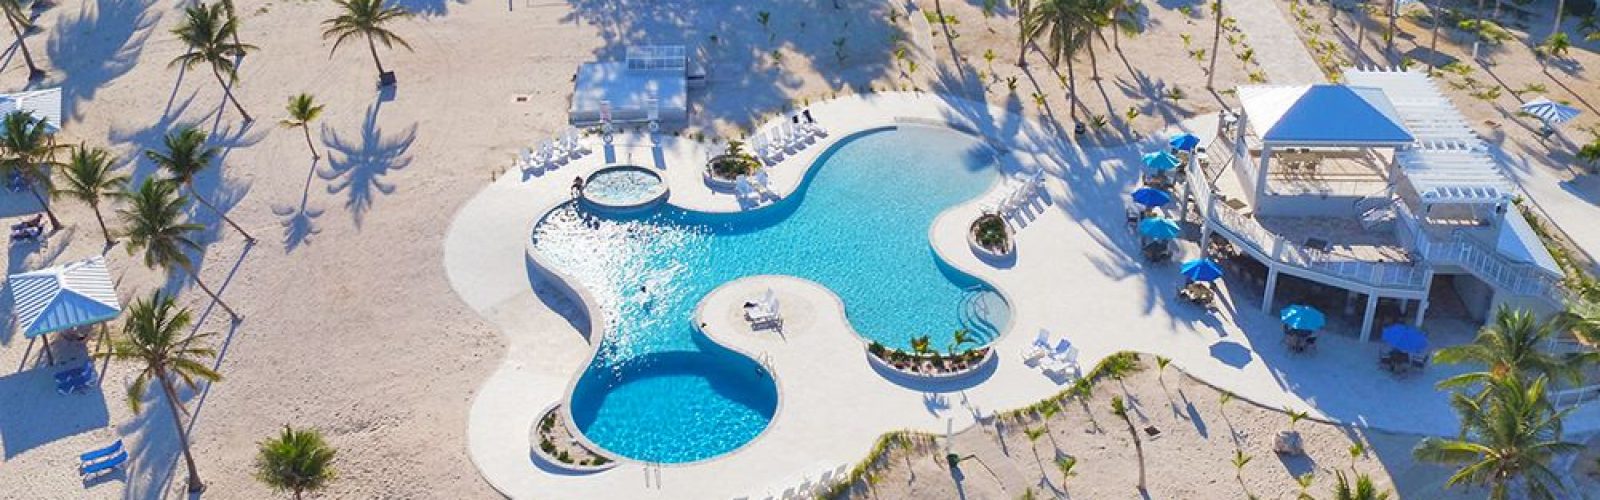 Cayman-Brac-Reef-Beach-Resort-1600x500.j